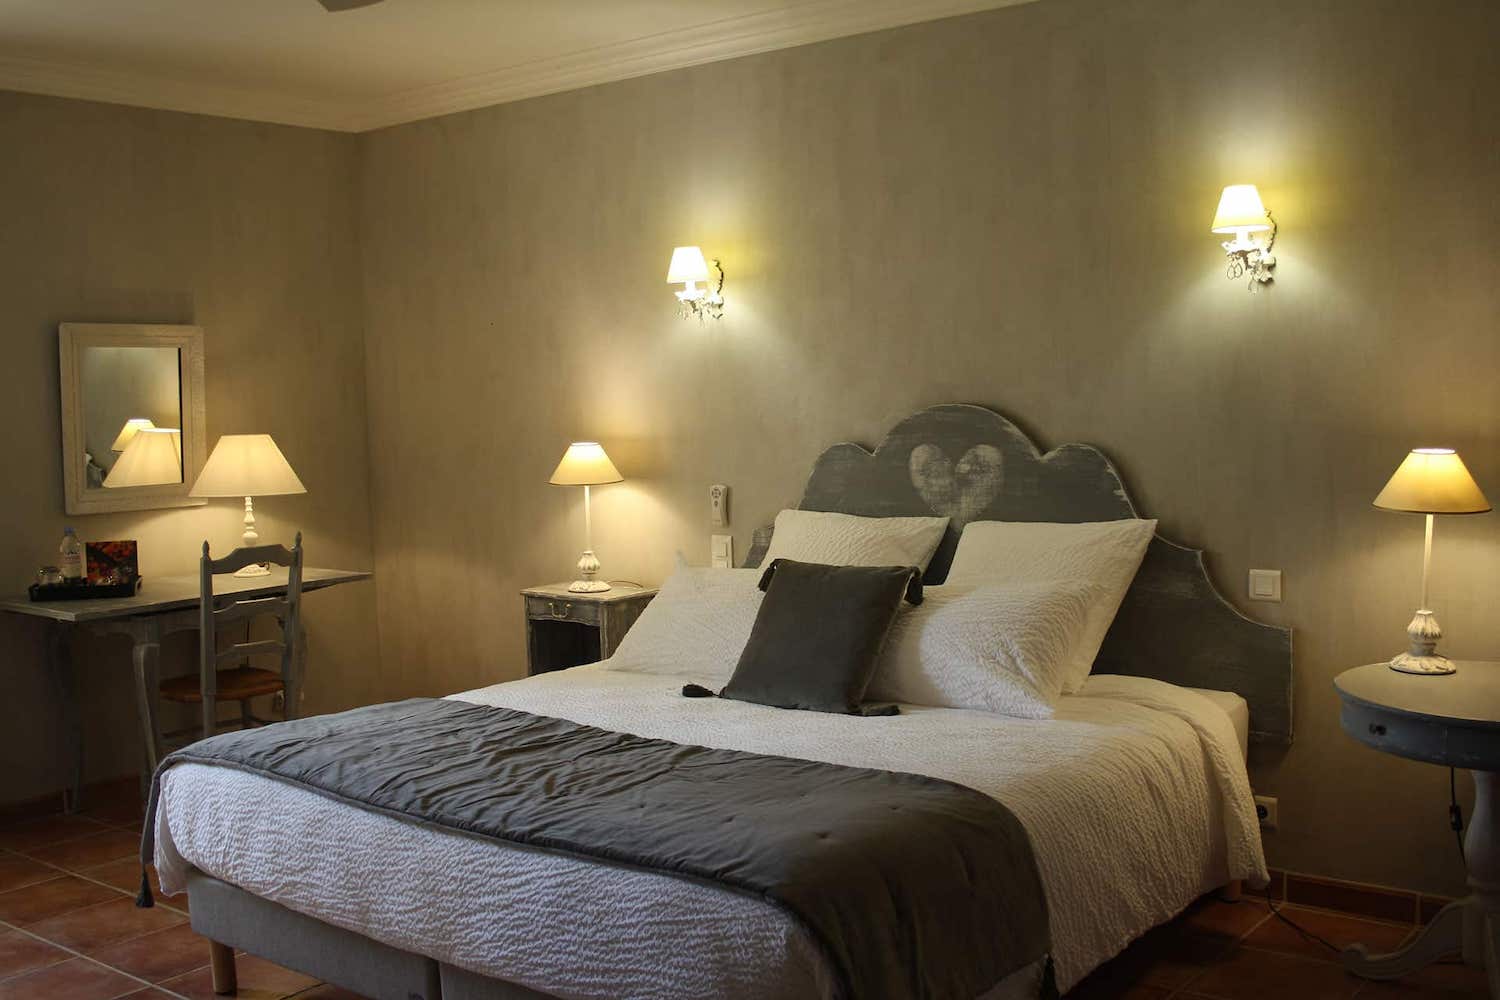 Vente chambres d'hôtes à Gordes dans le parc naturel régional du Luberon (Vaucluse)